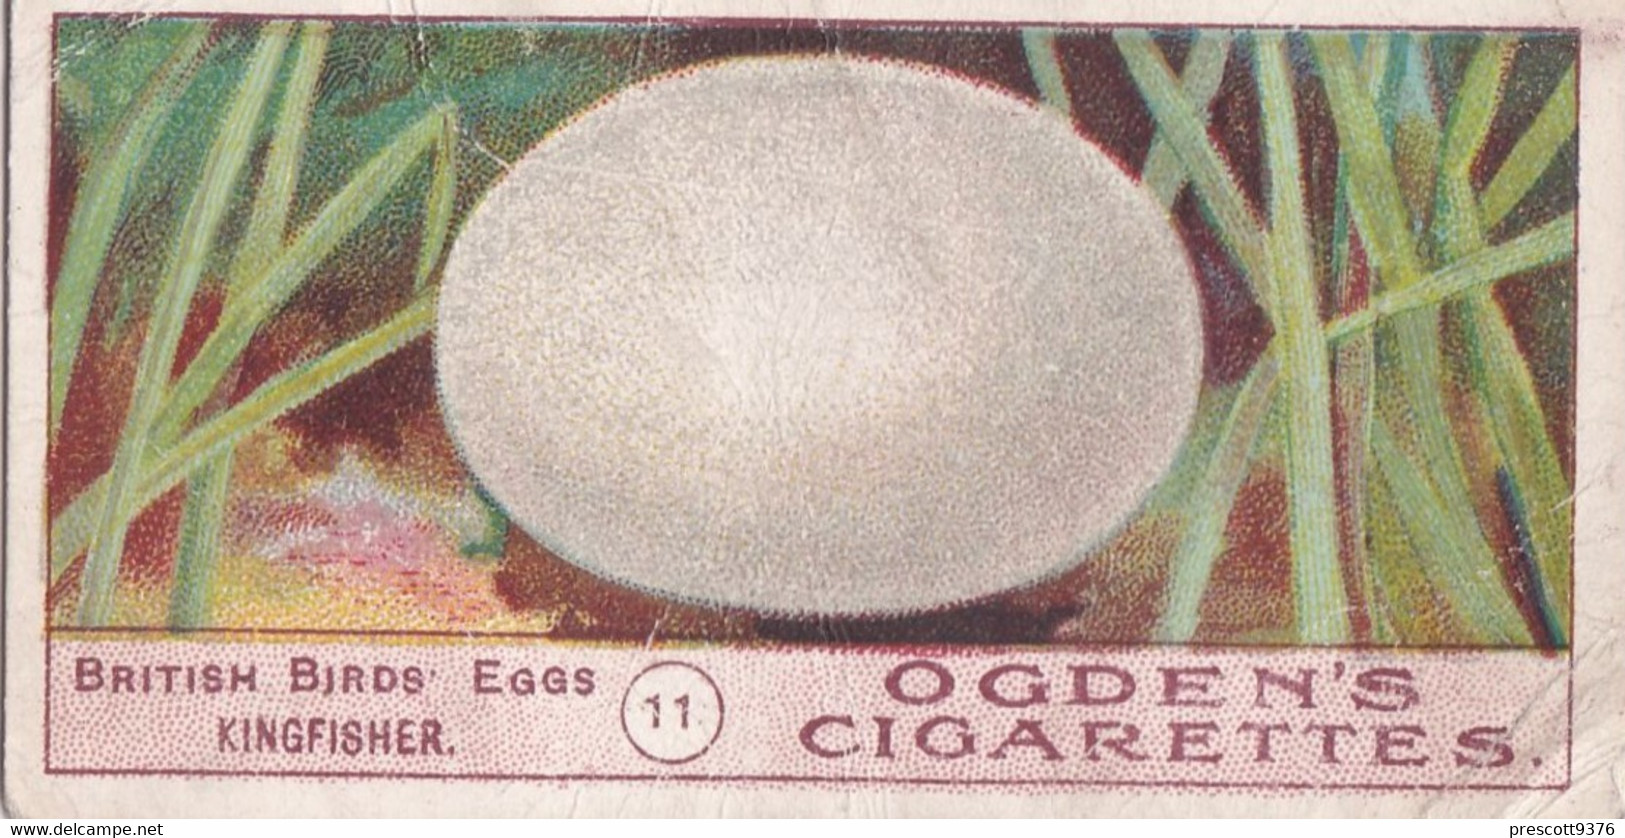 Birds Eggs 1908  - Ogdens  Cigarette Card - Original - Antique - 11 Kingfisher - Ogden's